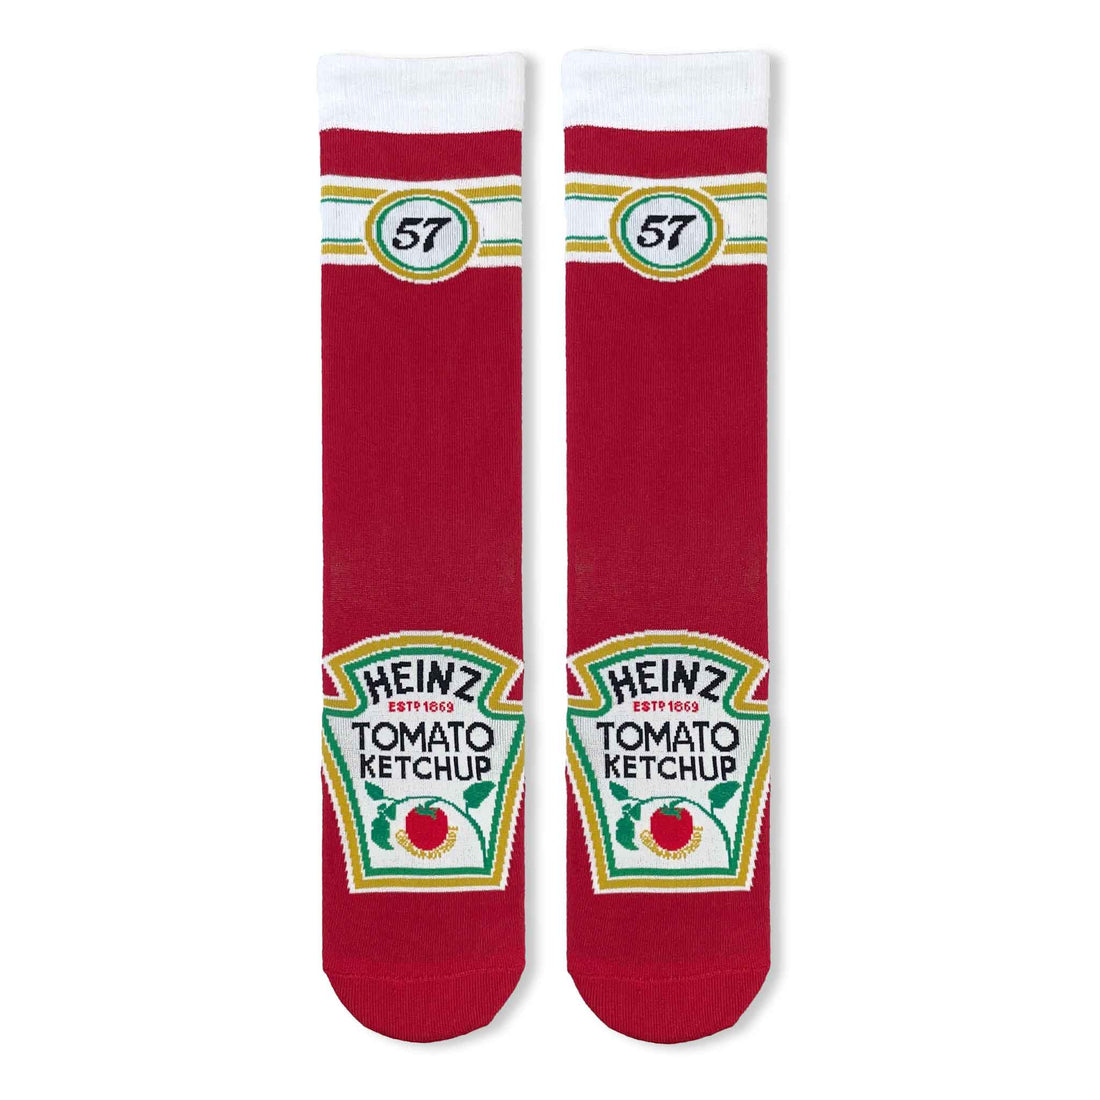 Heinz Tomato Ketchup Adult Socks